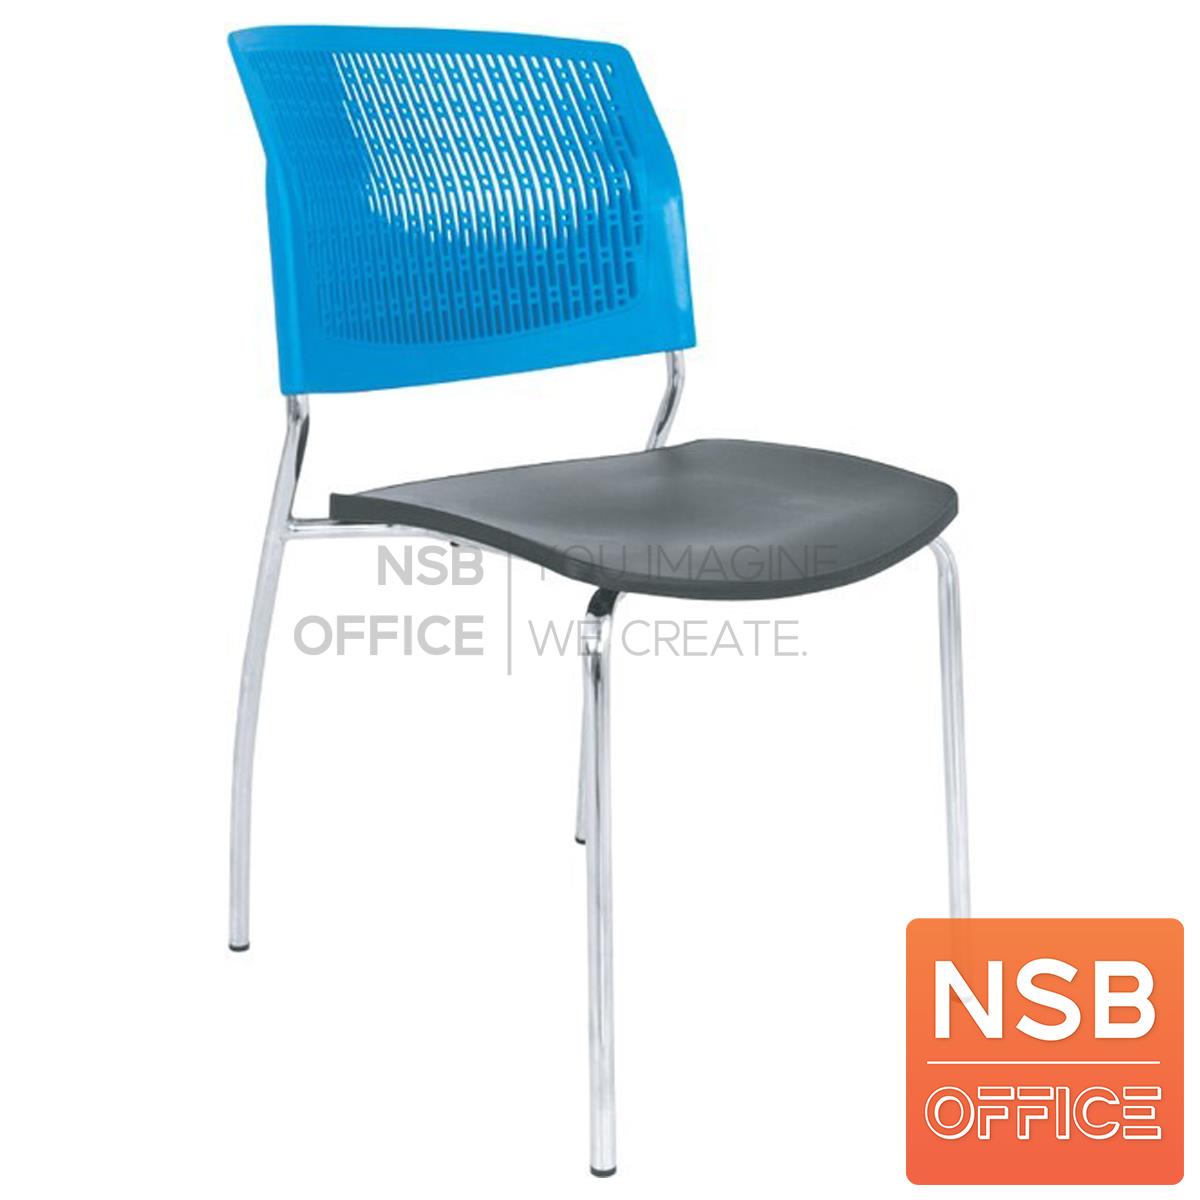 เก้าอี้อเนกประสงค์เฟรมโพลี่ รุ่น MS011  ขาเหล็กชุบโครเมี่ยม